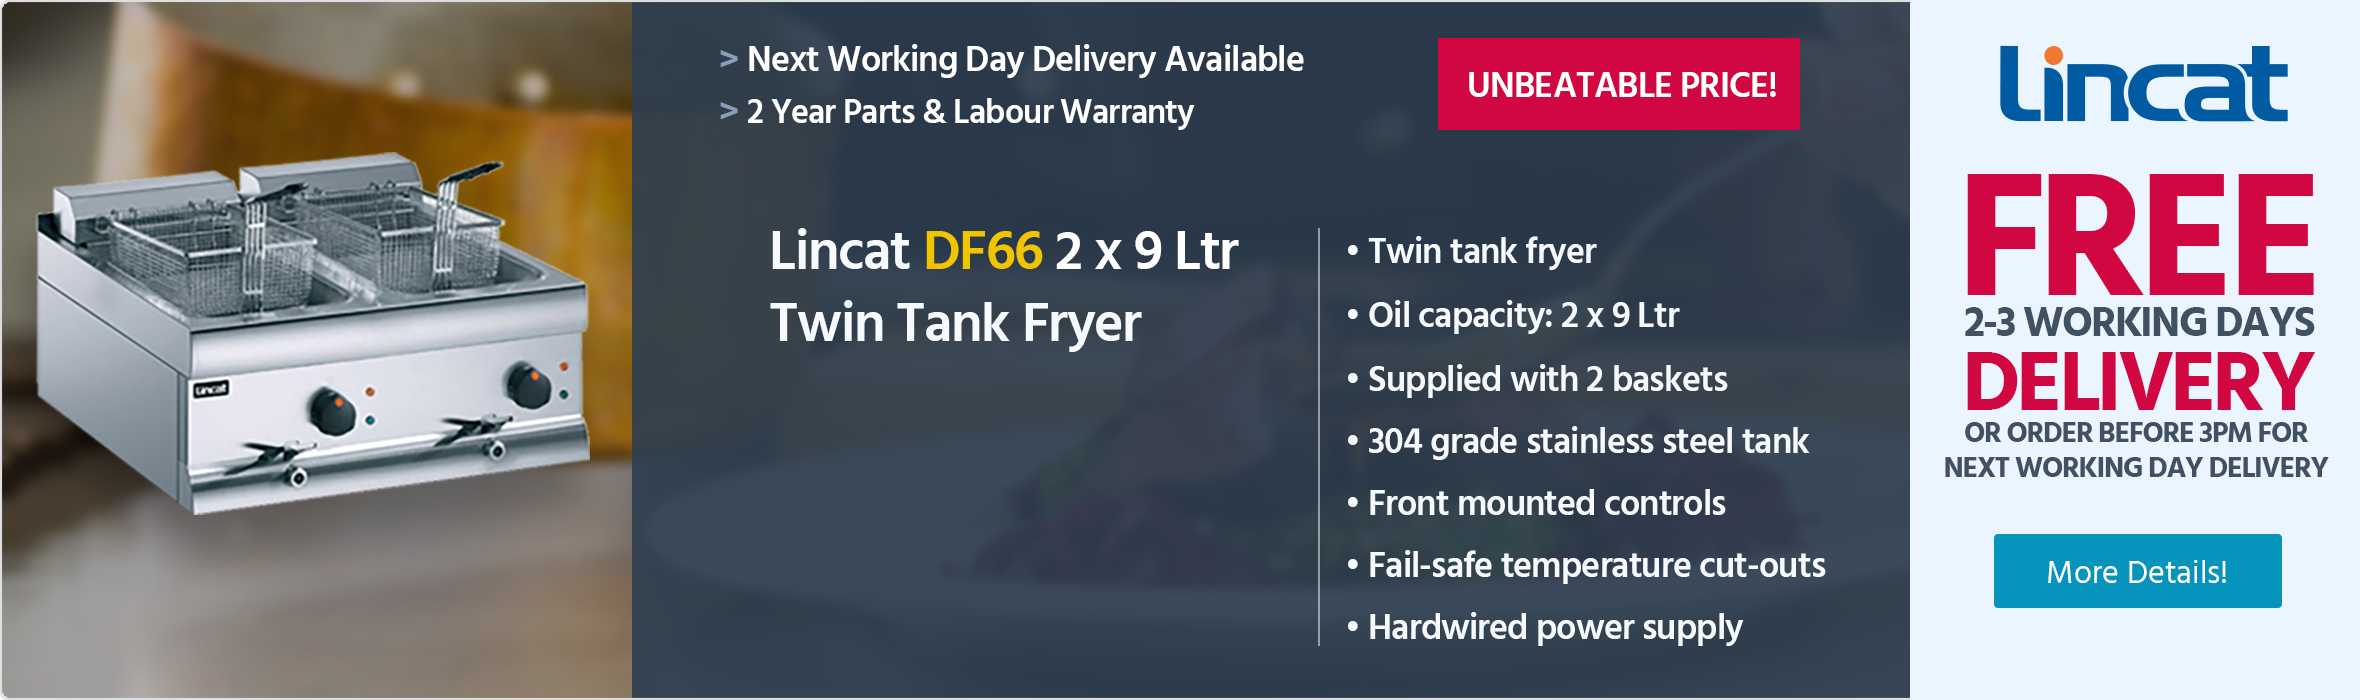 Lincat Silverlink 600 DF66 2 x 9 Ltr Electric Counter-top Twin Tank Fryer (2 Baskets) - J537